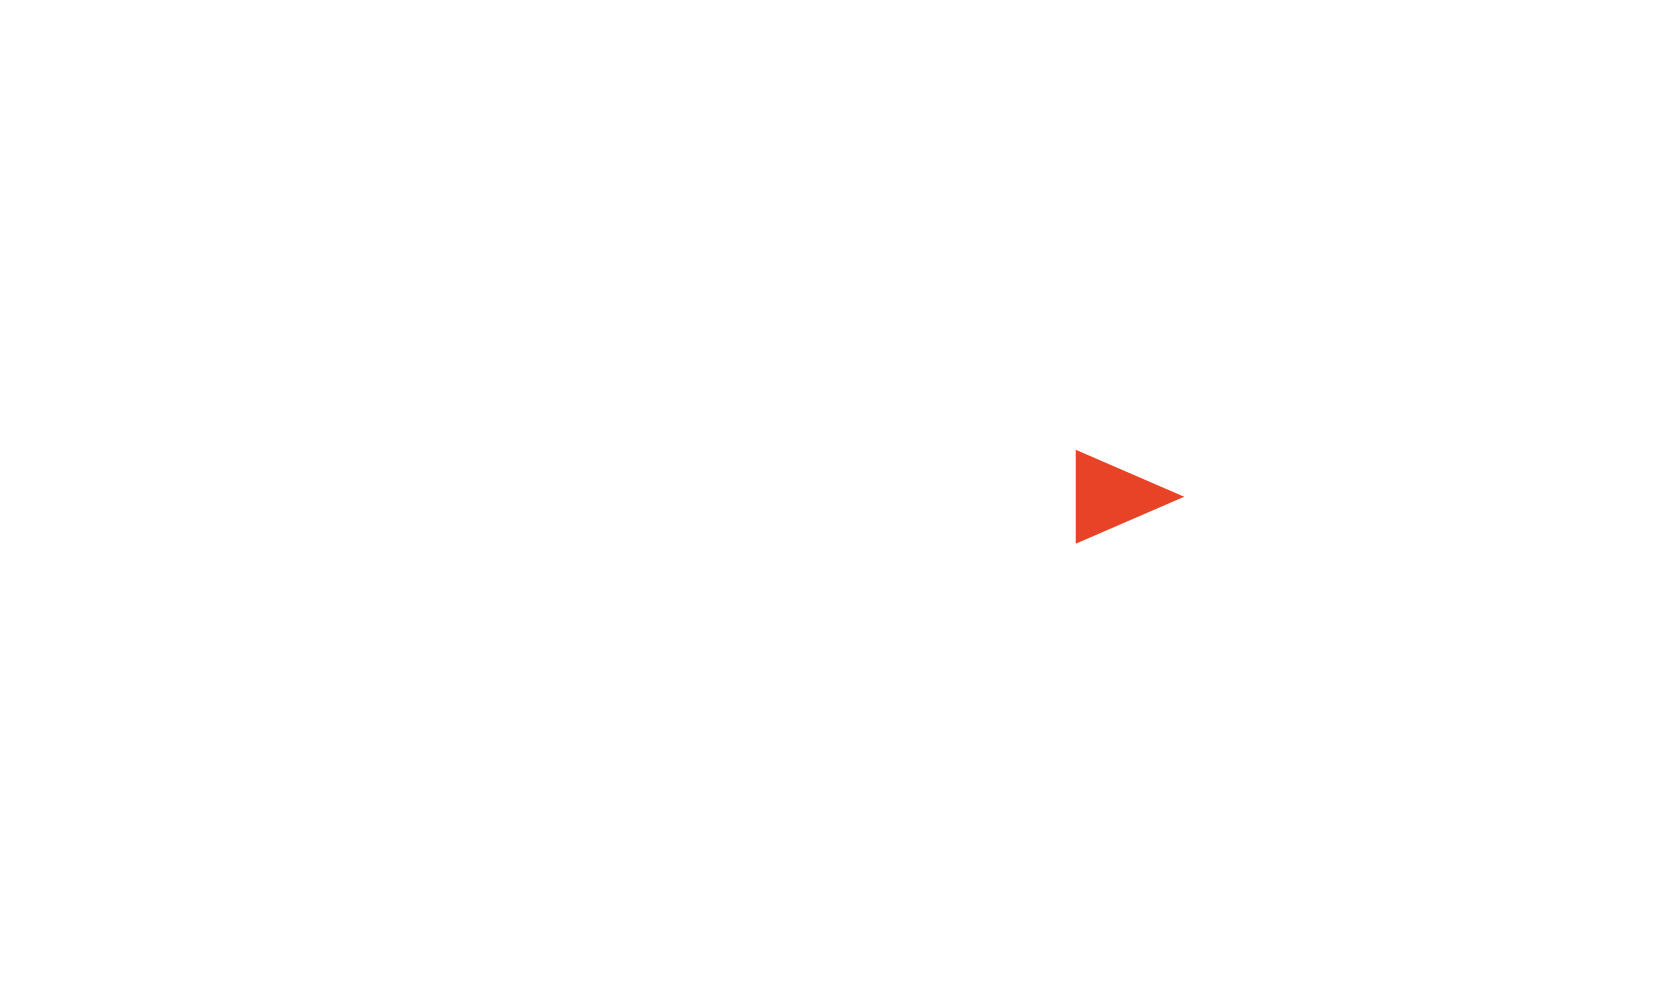 Abl3